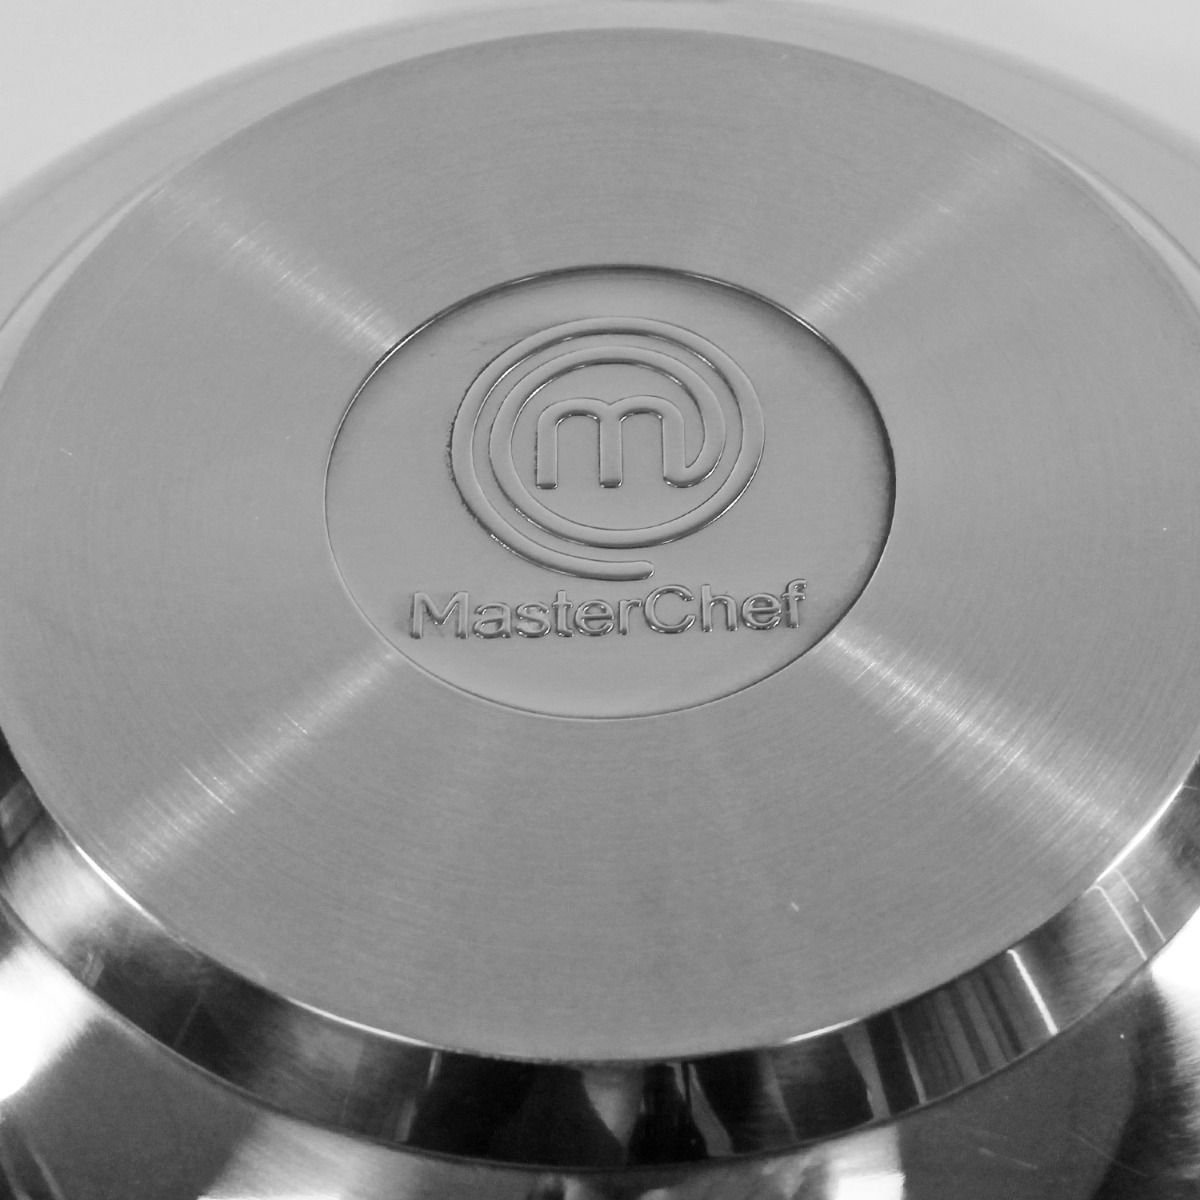 MasterChef - Wokpan - met glazen deksel - 28 cm - Geschikt voor alle  warmtebronnen... | bol.com